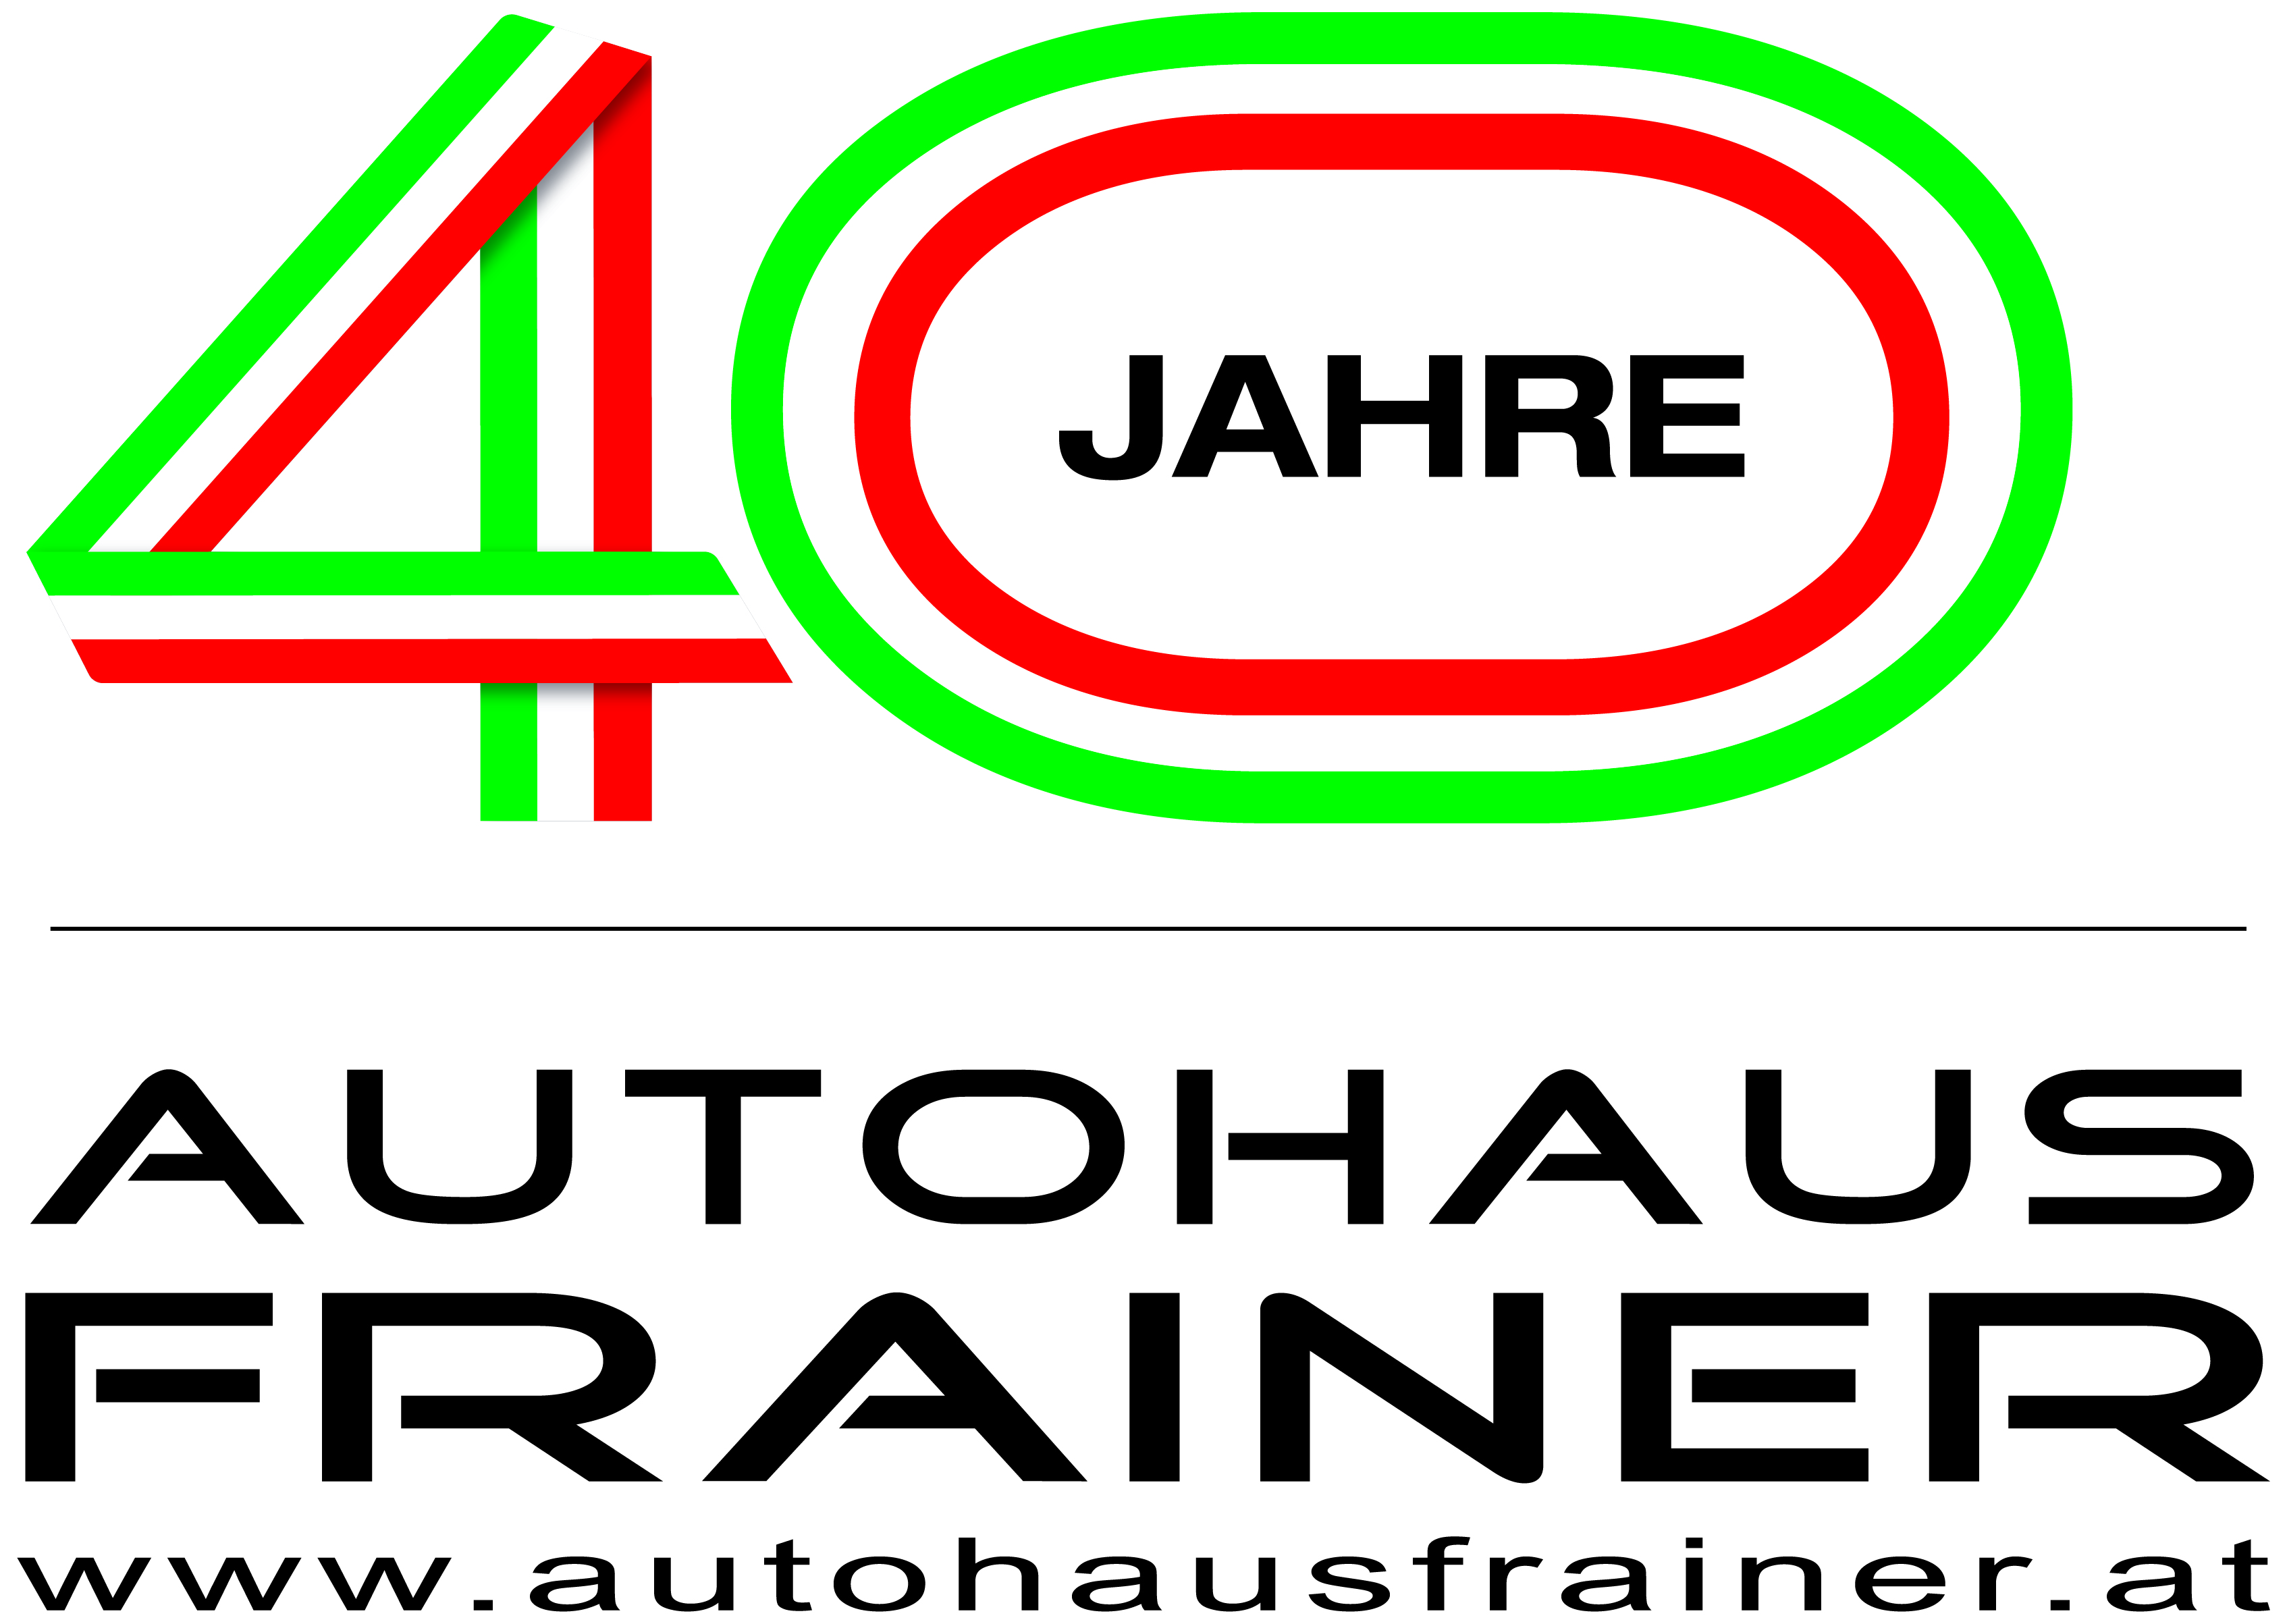 Autohaus Werner Frainer